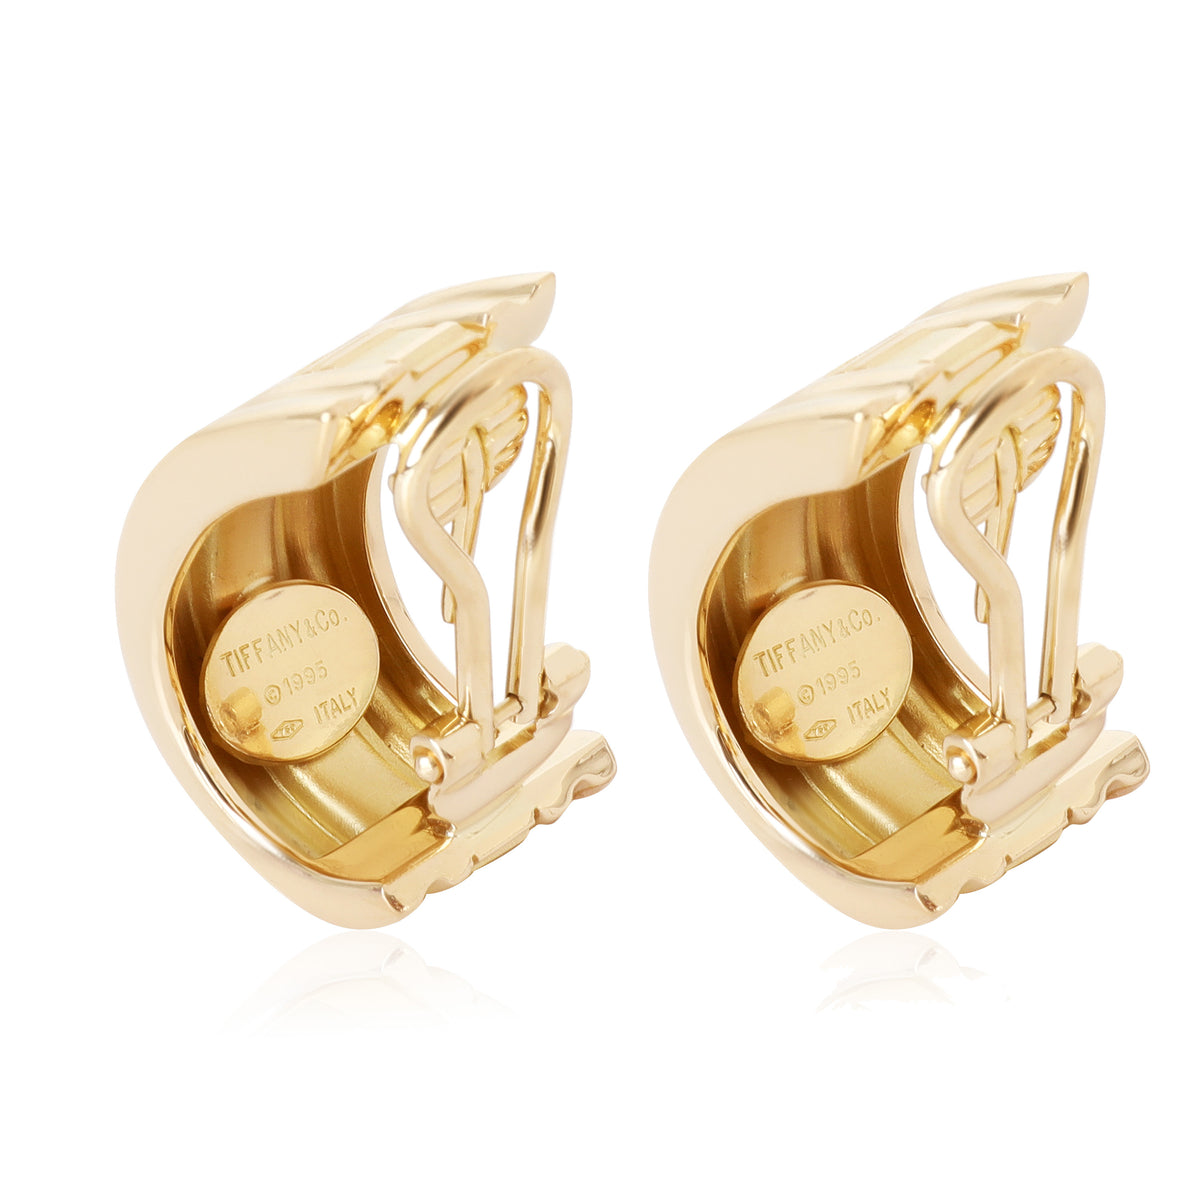 Tiffany & Co. Atlas Earrings in 18k Yellow Gold